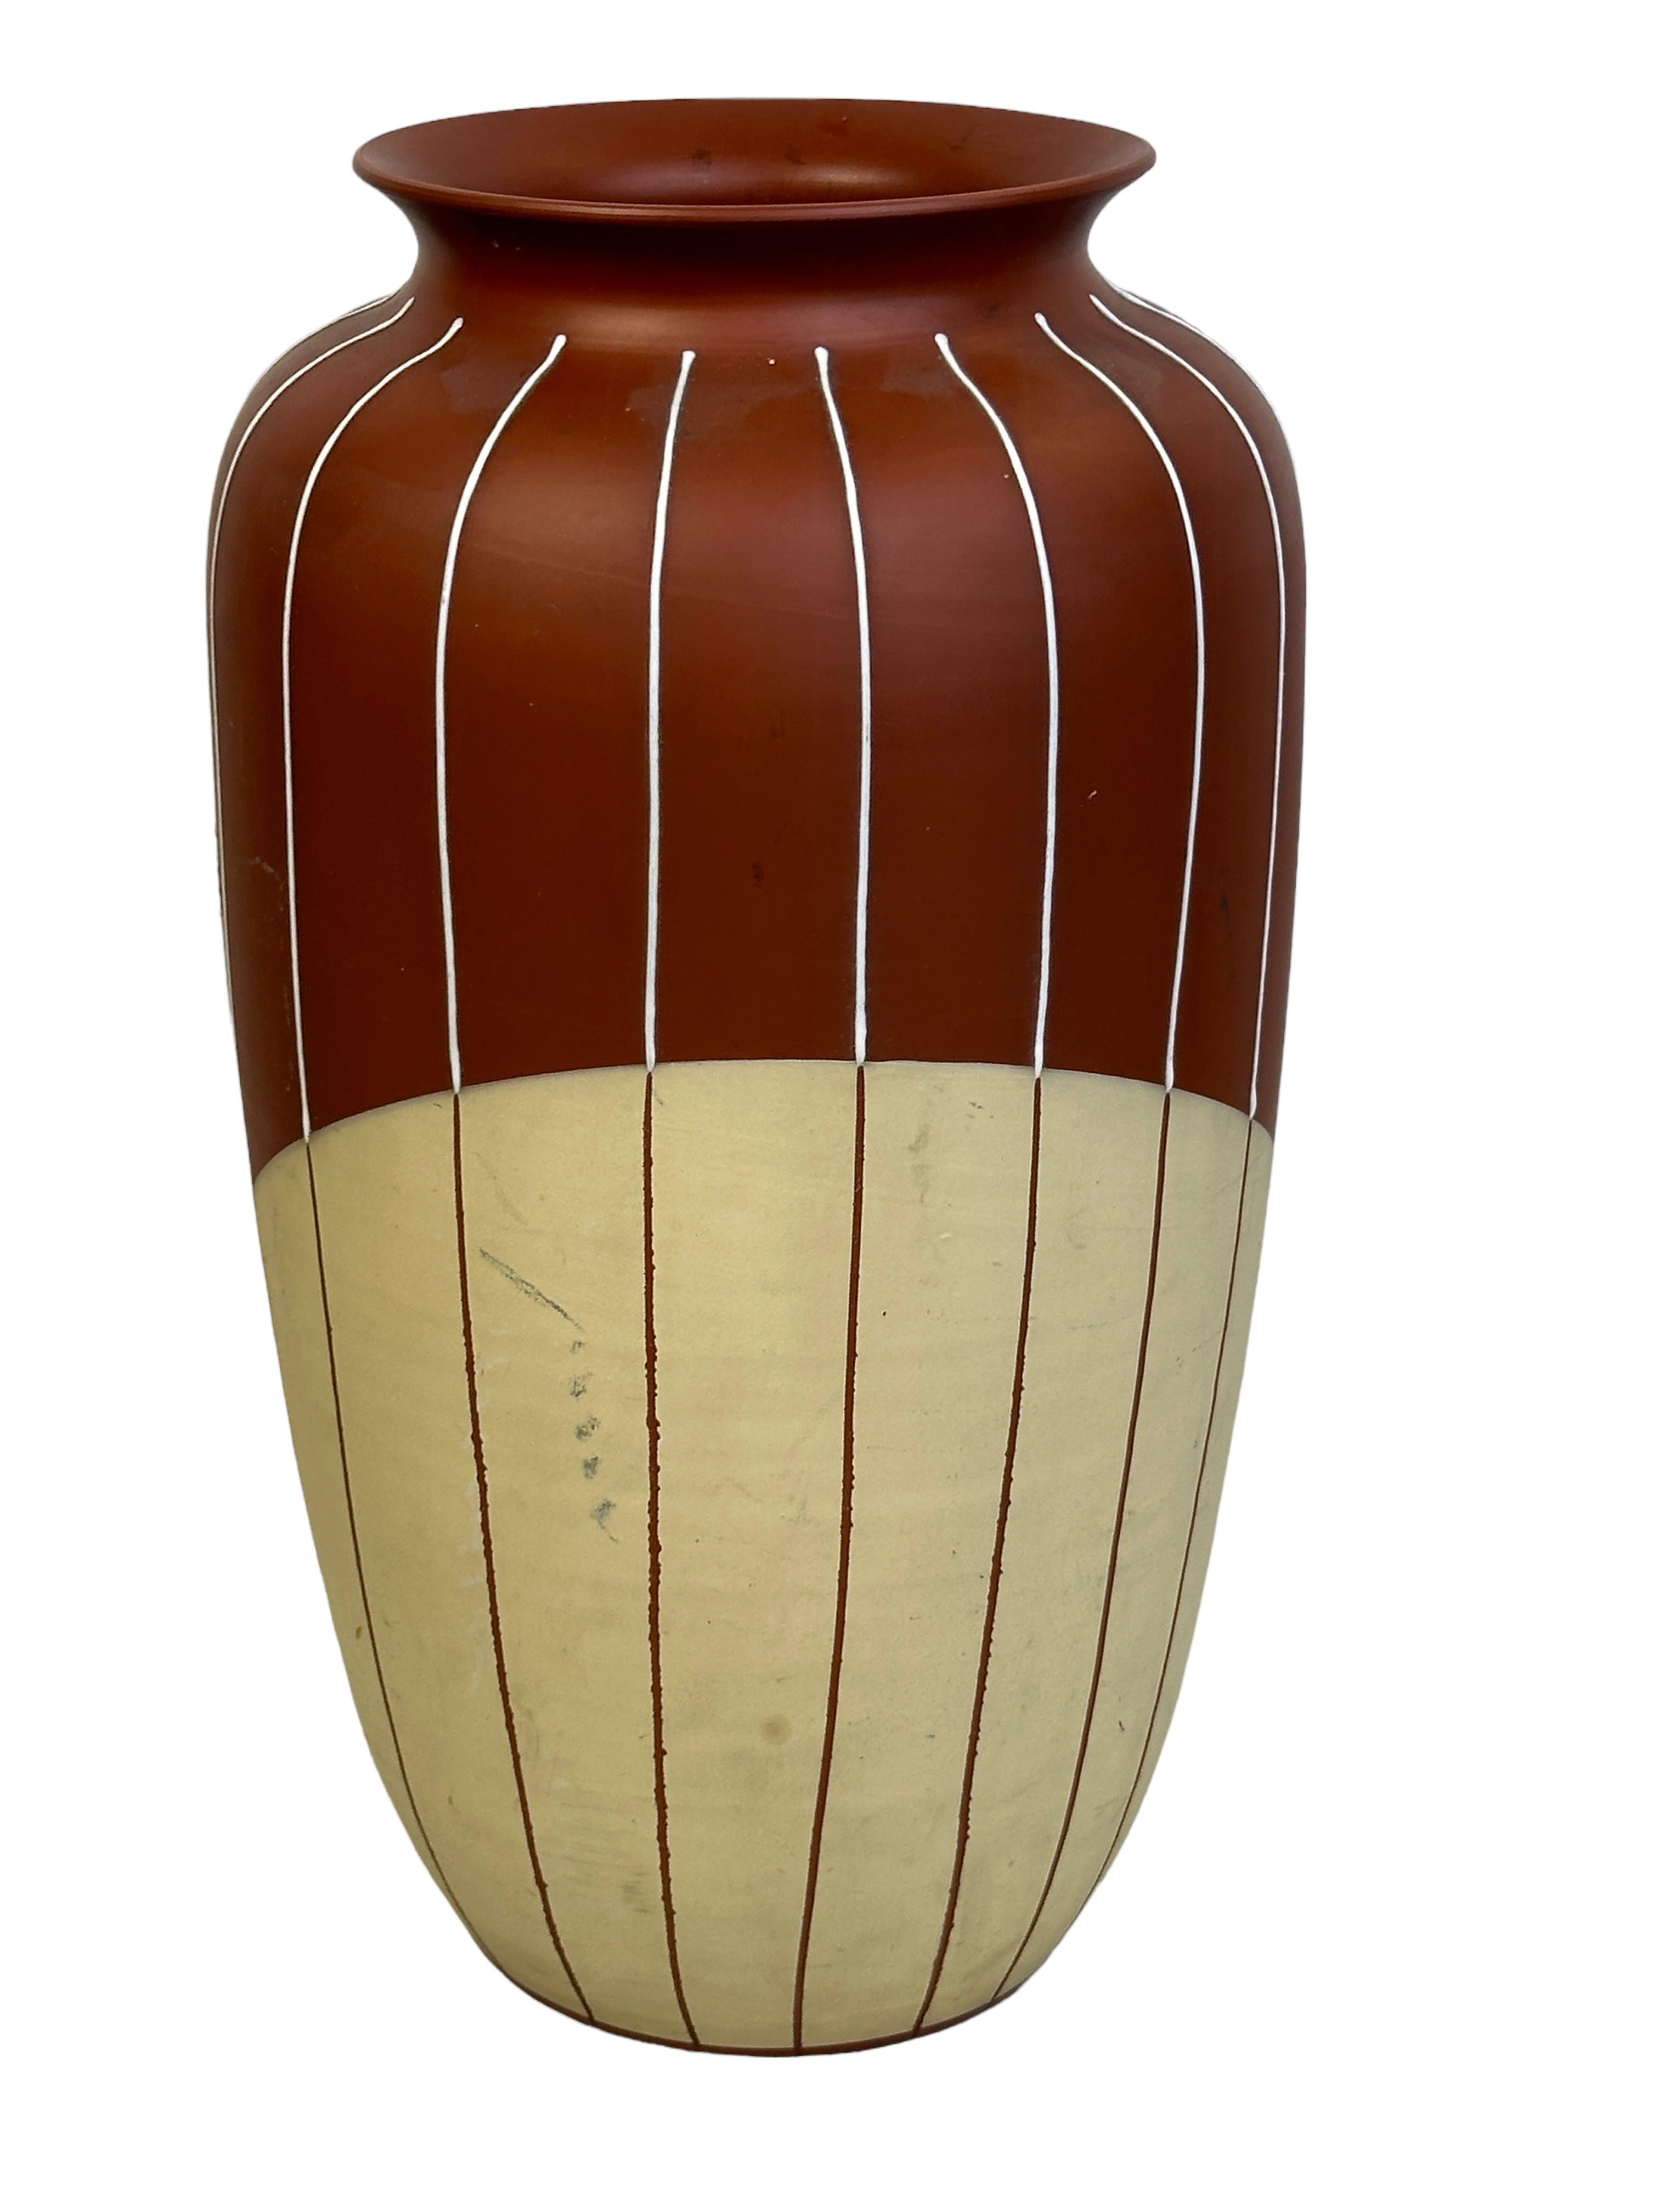 Un étonnant vase de sol en céramique de style moderne du milieu du siècle, fabriqué en Allemagne, vers les années 1950. Il s'agit d'un vase lourd. Le vase est en très bon état, sans éclats, fissures ou piqûres de puces. Jolie couleur et certainement